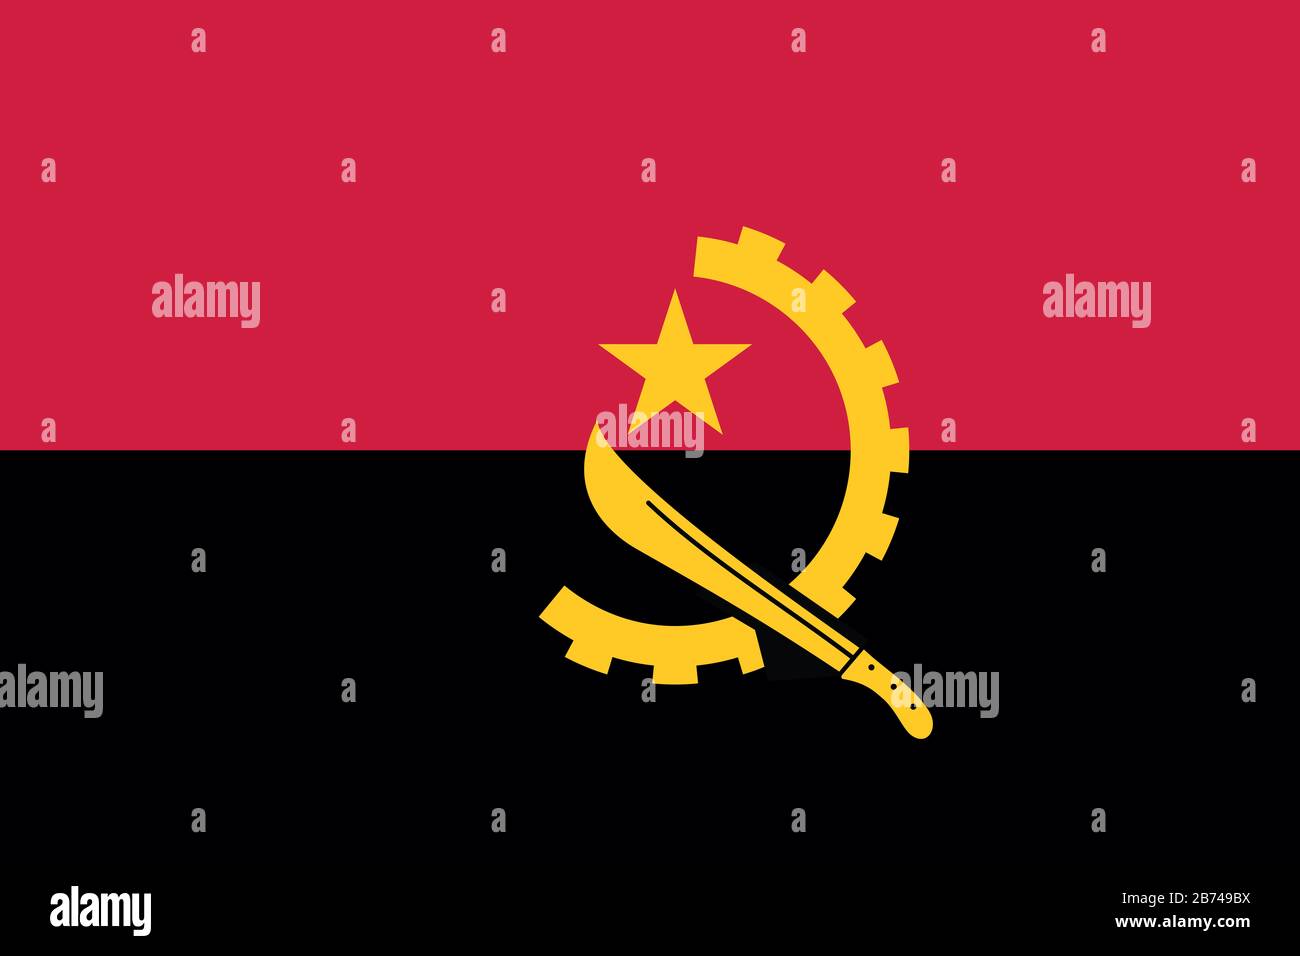 Flagge von Äthiopien - Standardverhältnis der angolanischen Flagge - True RGB-Farbmodus Stockfoto